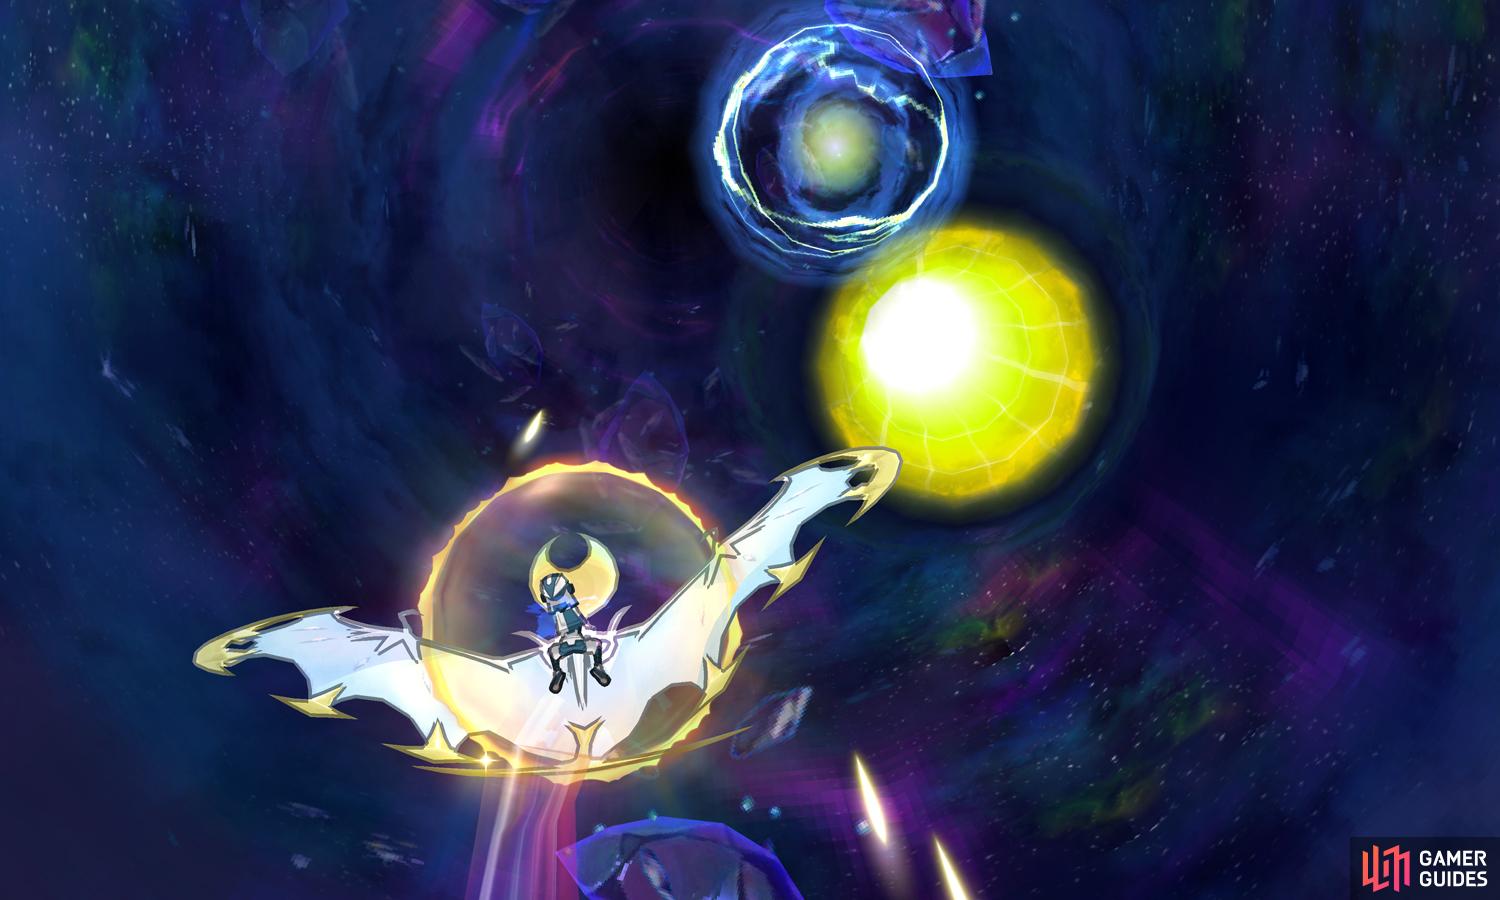 POKEMON SPOTLIGHT: SOLGALEO #40 Pokemon Ultra Sun & Moon! Ubers